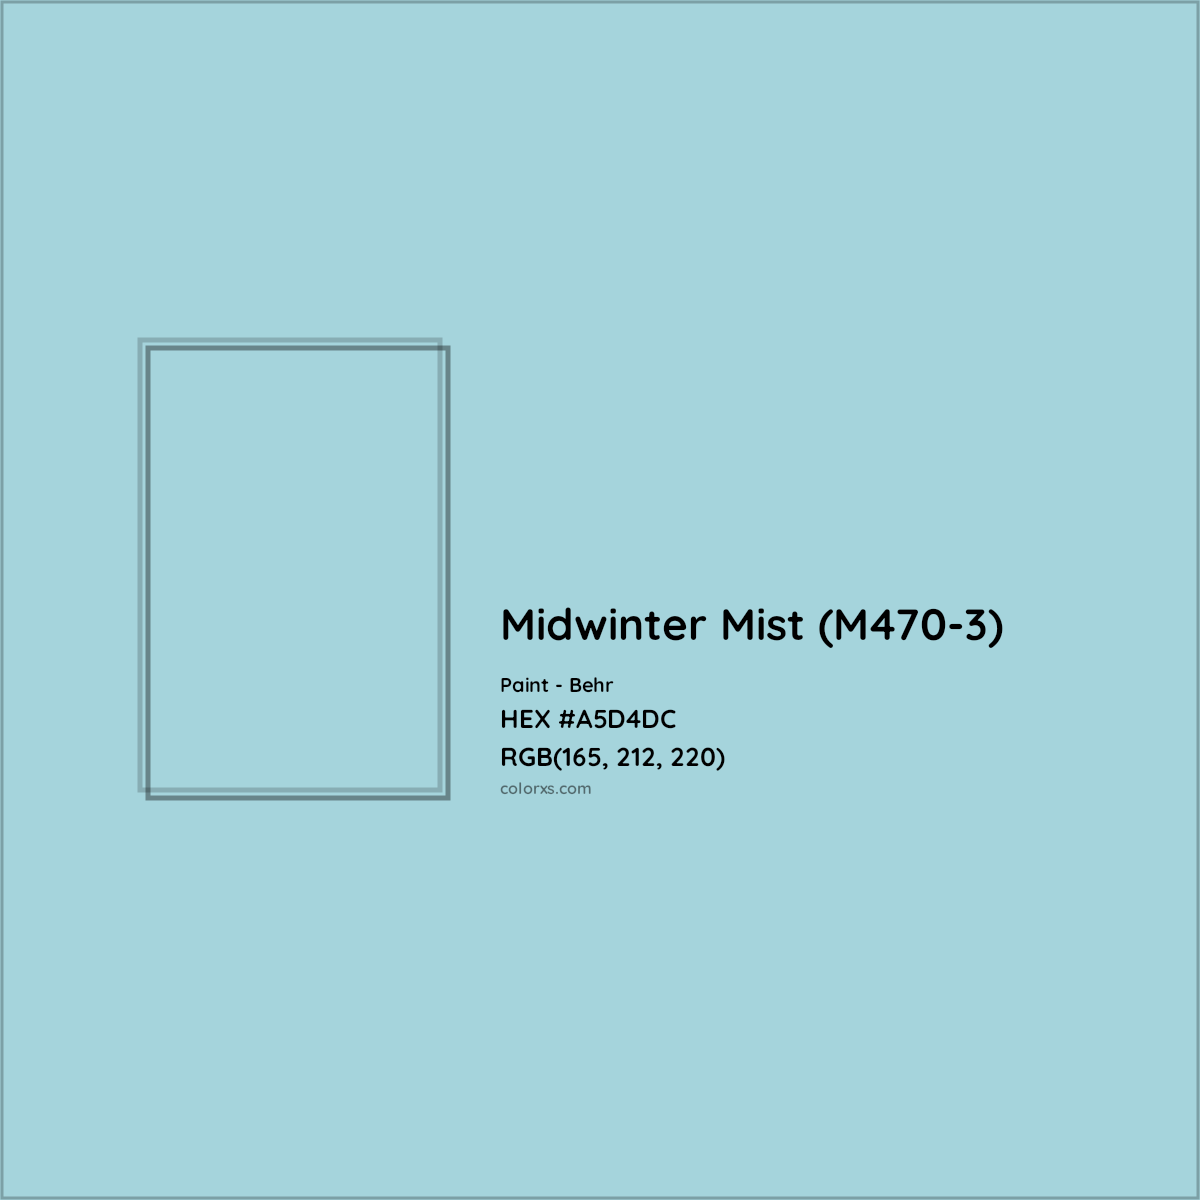 HEX #A5D4DC Midwinter Mist (M470-3) Paint Behr - Color Code